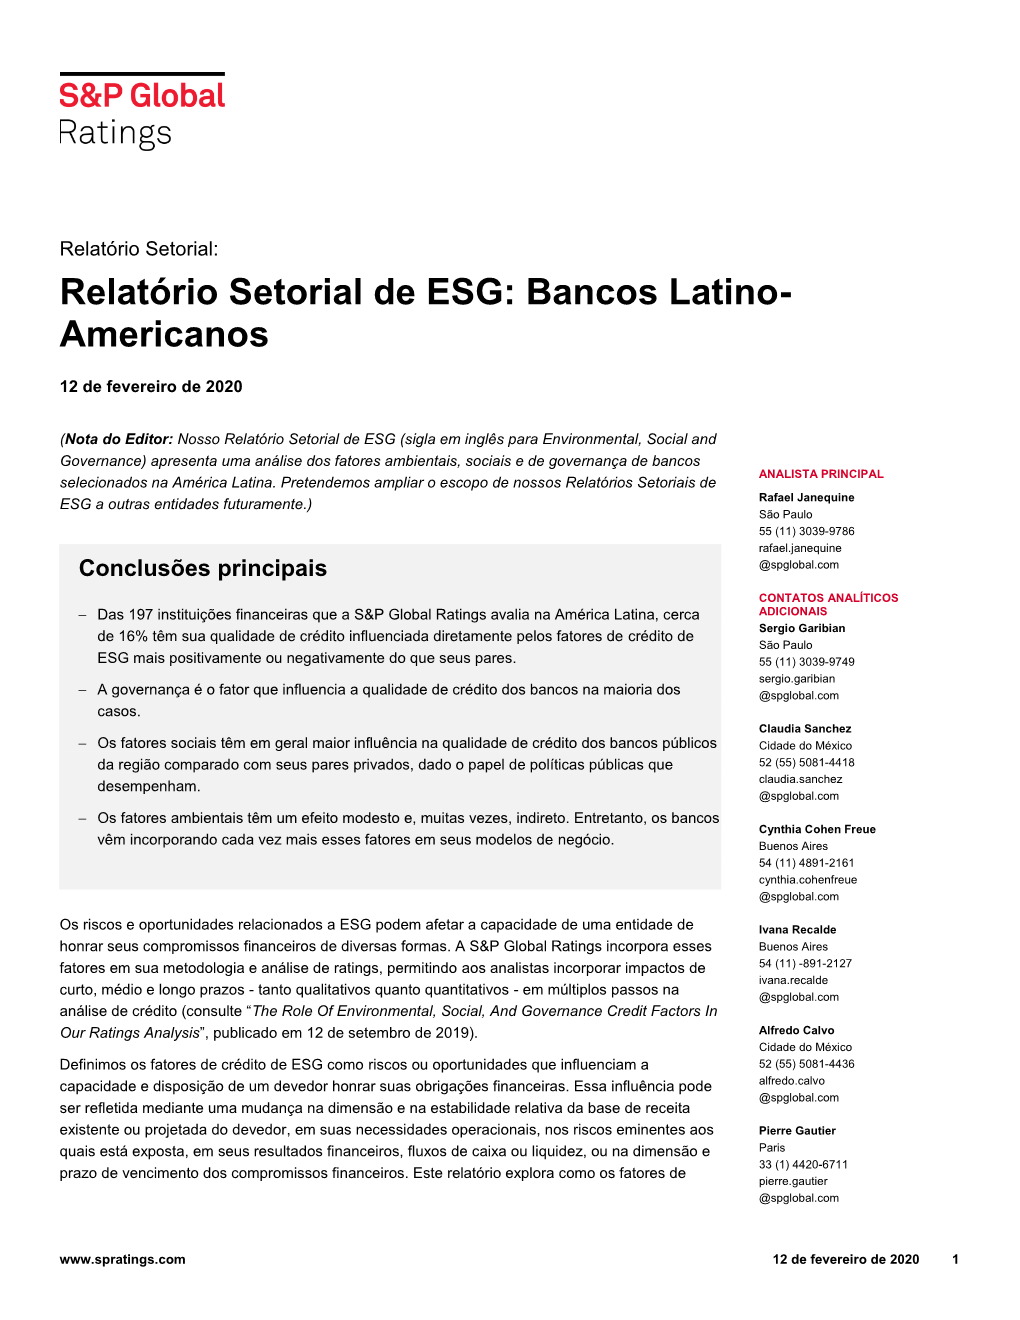 Relatório Setorial De ESG: Bancos Latino-Americanos, 12 De Fevereiro